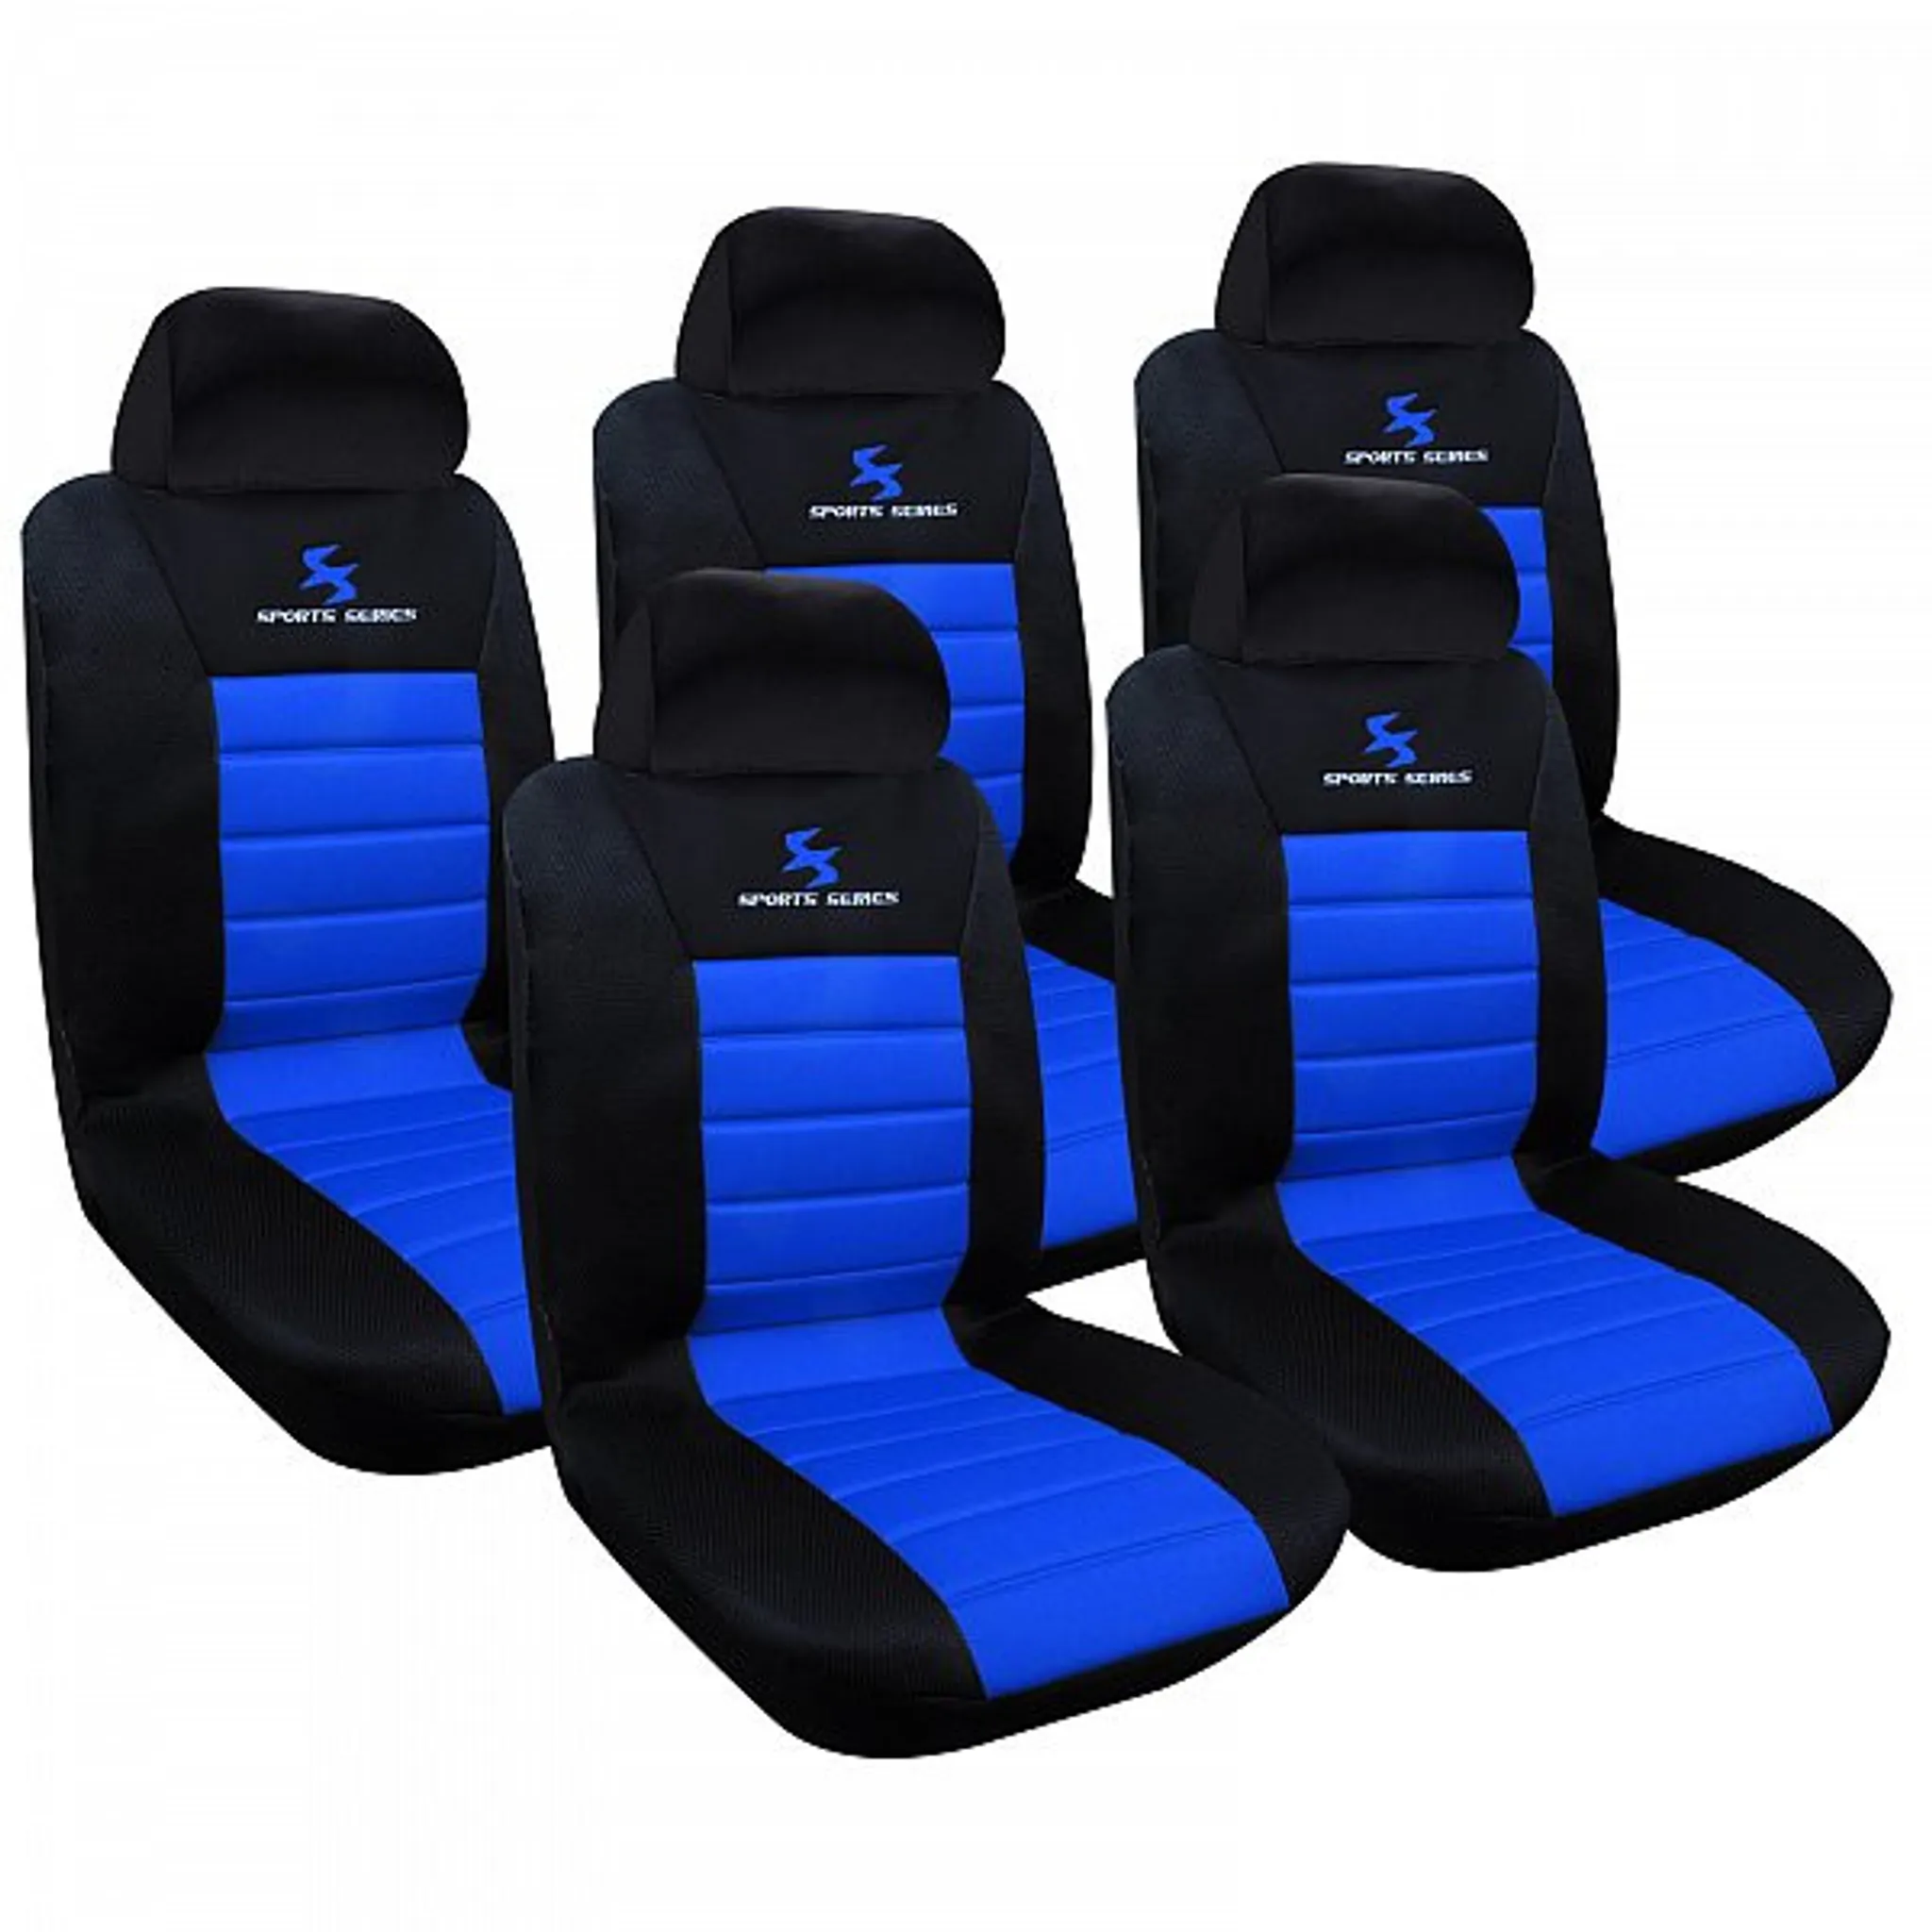 MLXABH Autositzbezug 5-Sitzer, für B-MW 6, Autositzbezüge Komplettset,  wasserdichter Autositzbezug, Autositzbezüge für Frauen Komplettset, Farbe